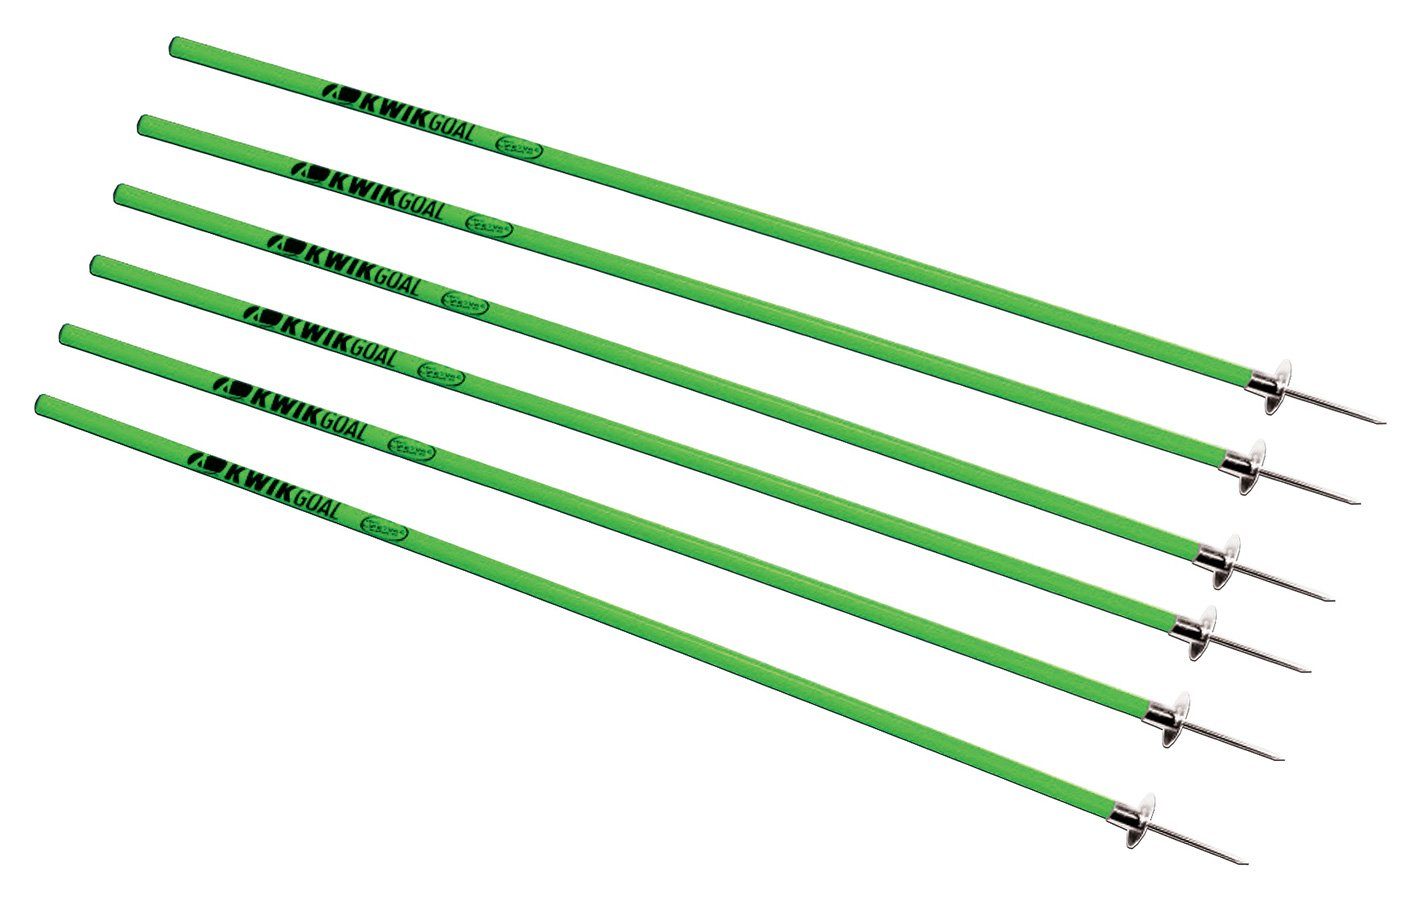 Kwikgoal Coaching Sticks (Set of 6) | 16B10 Training equipment Kwikgoal Hi-Vis Green 